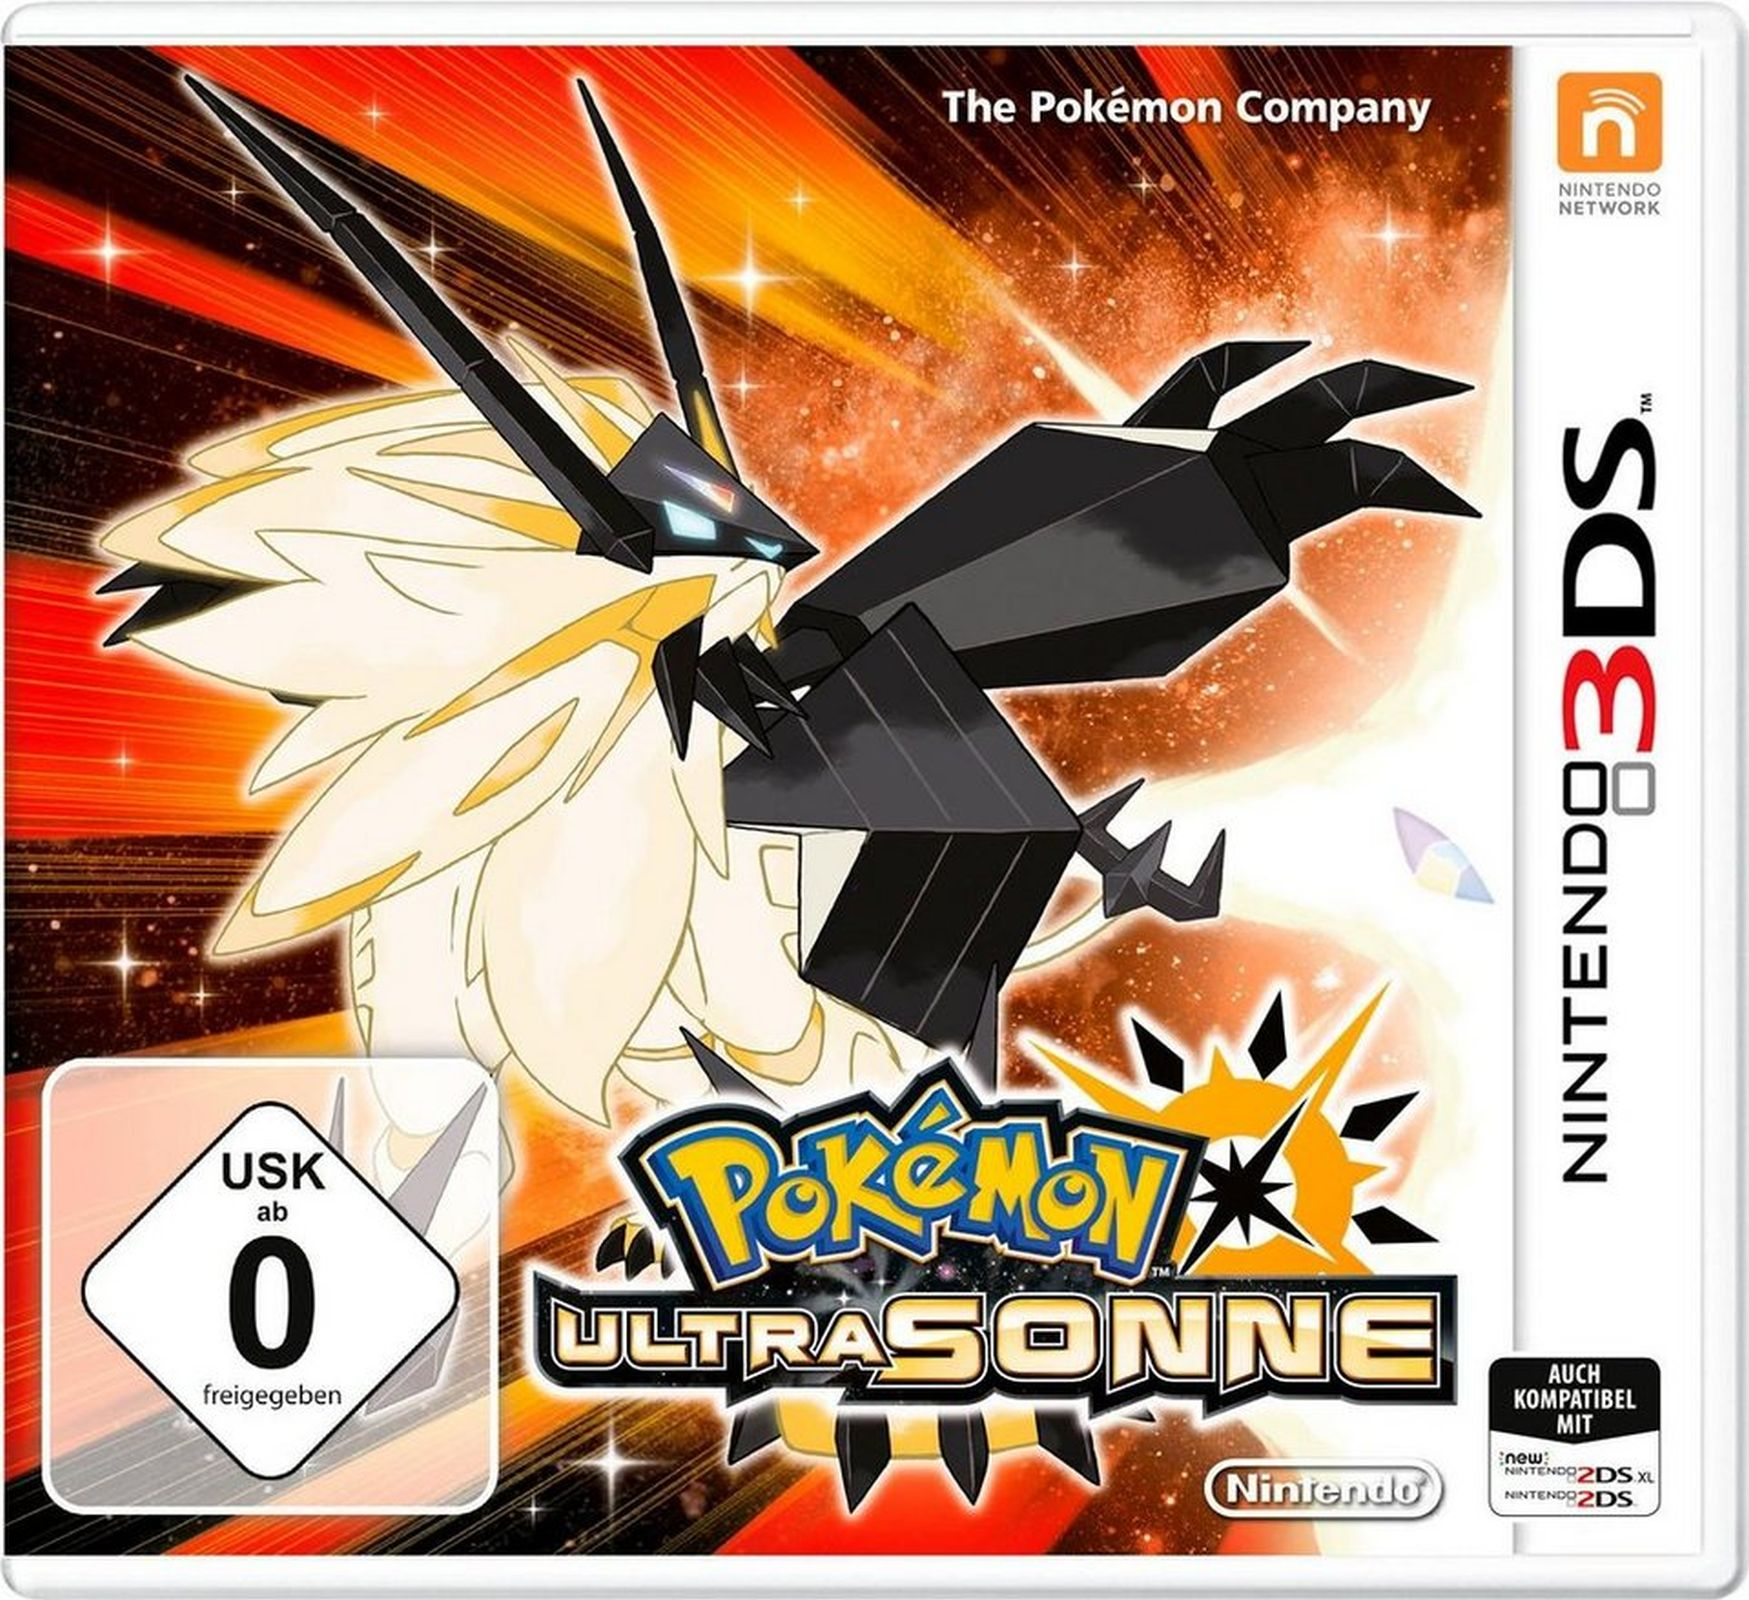 Pokémon 3DS] - Ultrasonne [Nintendo